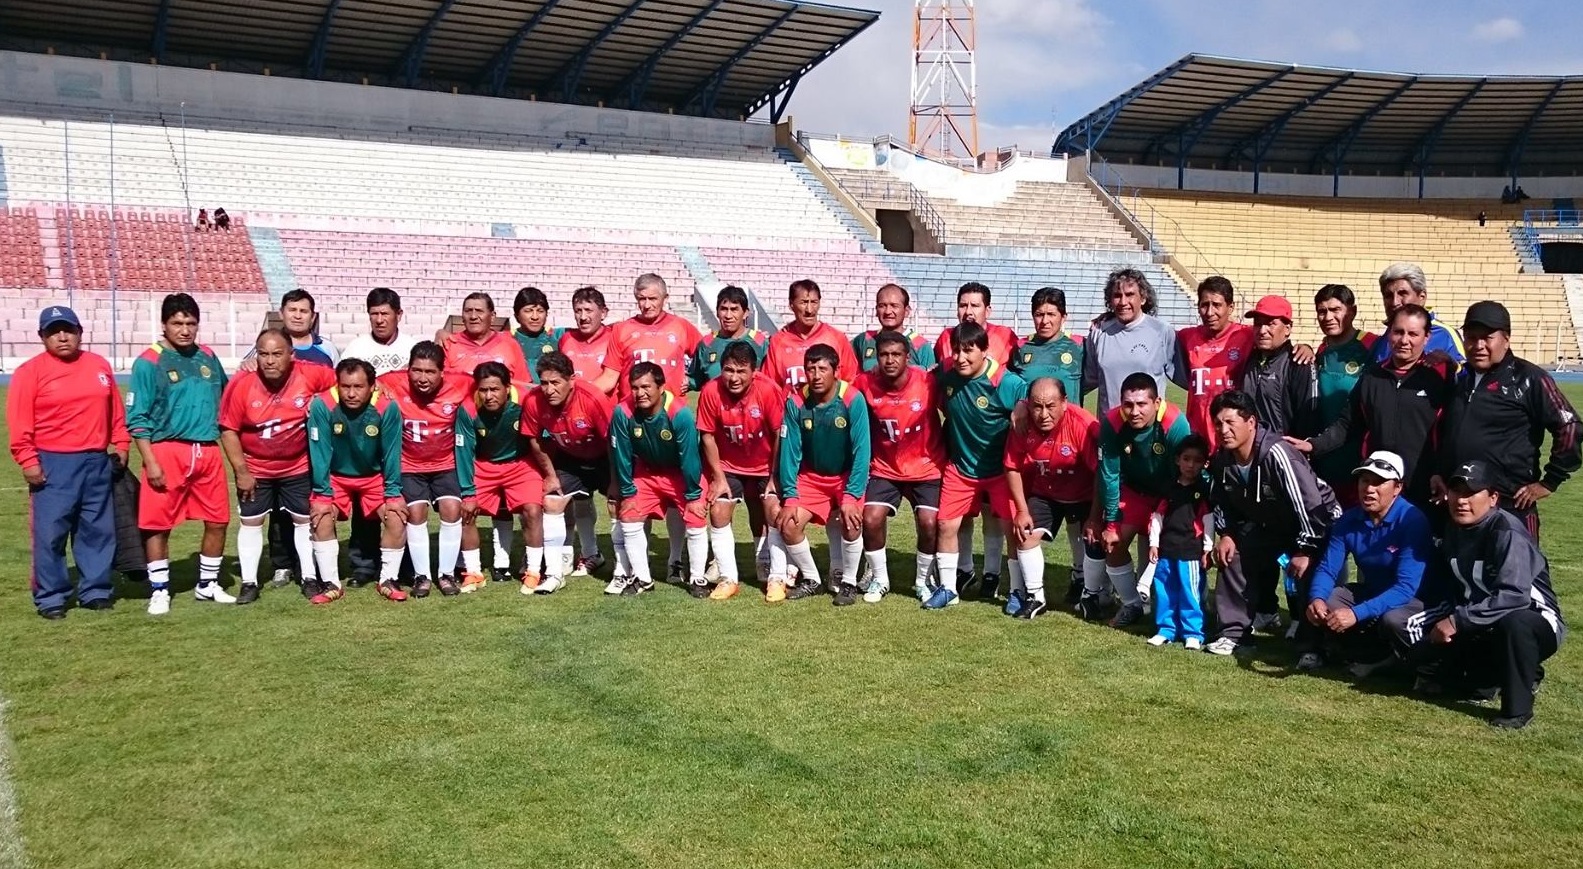 Homenaje a la “Mutual de Ex Jugadores de Fútbol Potosí” en conmemoración de sus 58 años de existencia